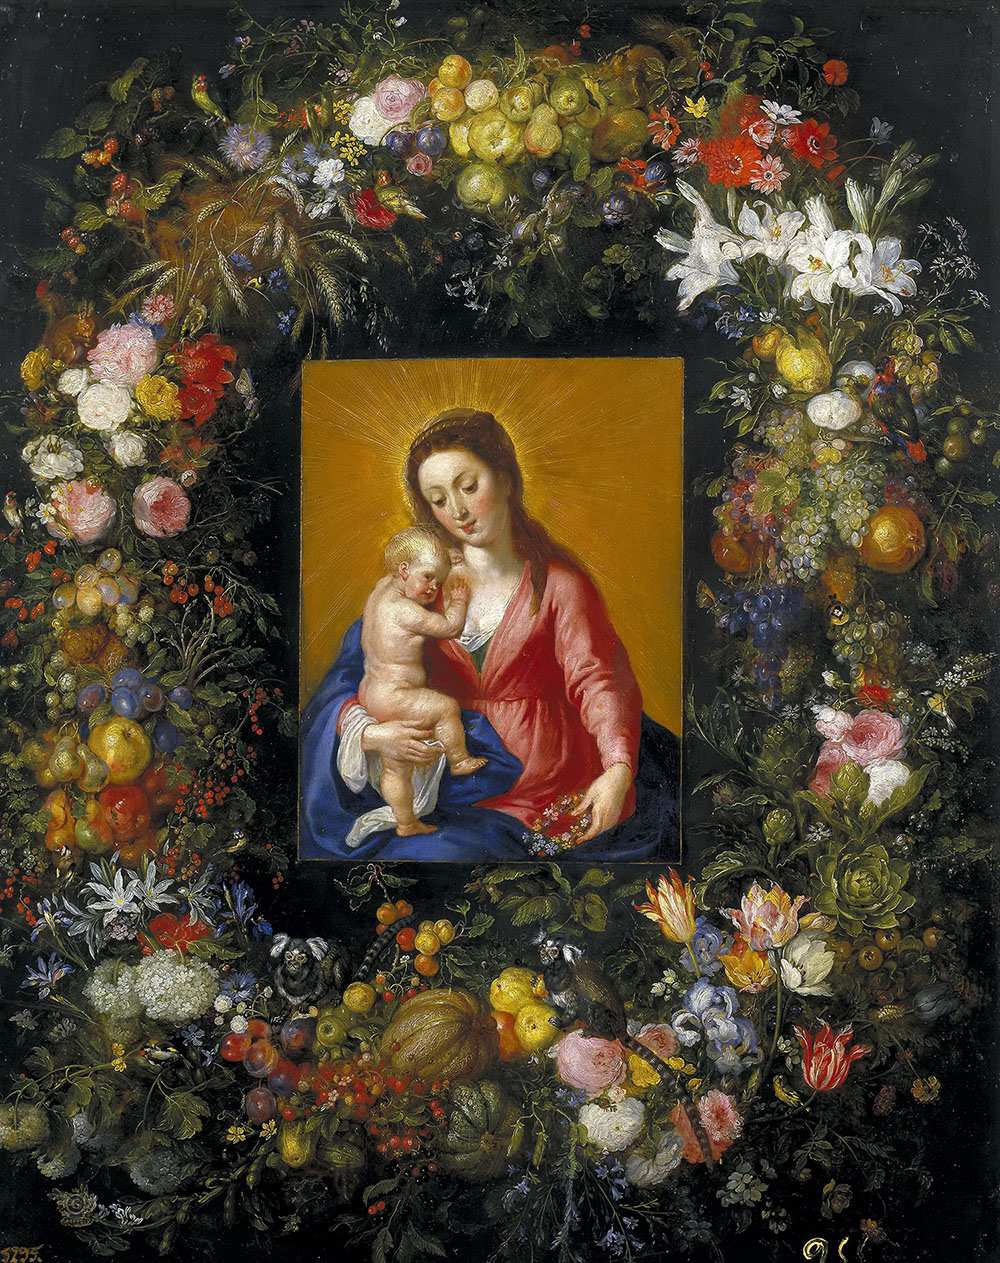 Ян Брейгель Старший. "Мадонна с Младенцем в цветочной гирлянде". 1621. Прадо, Мадрид.